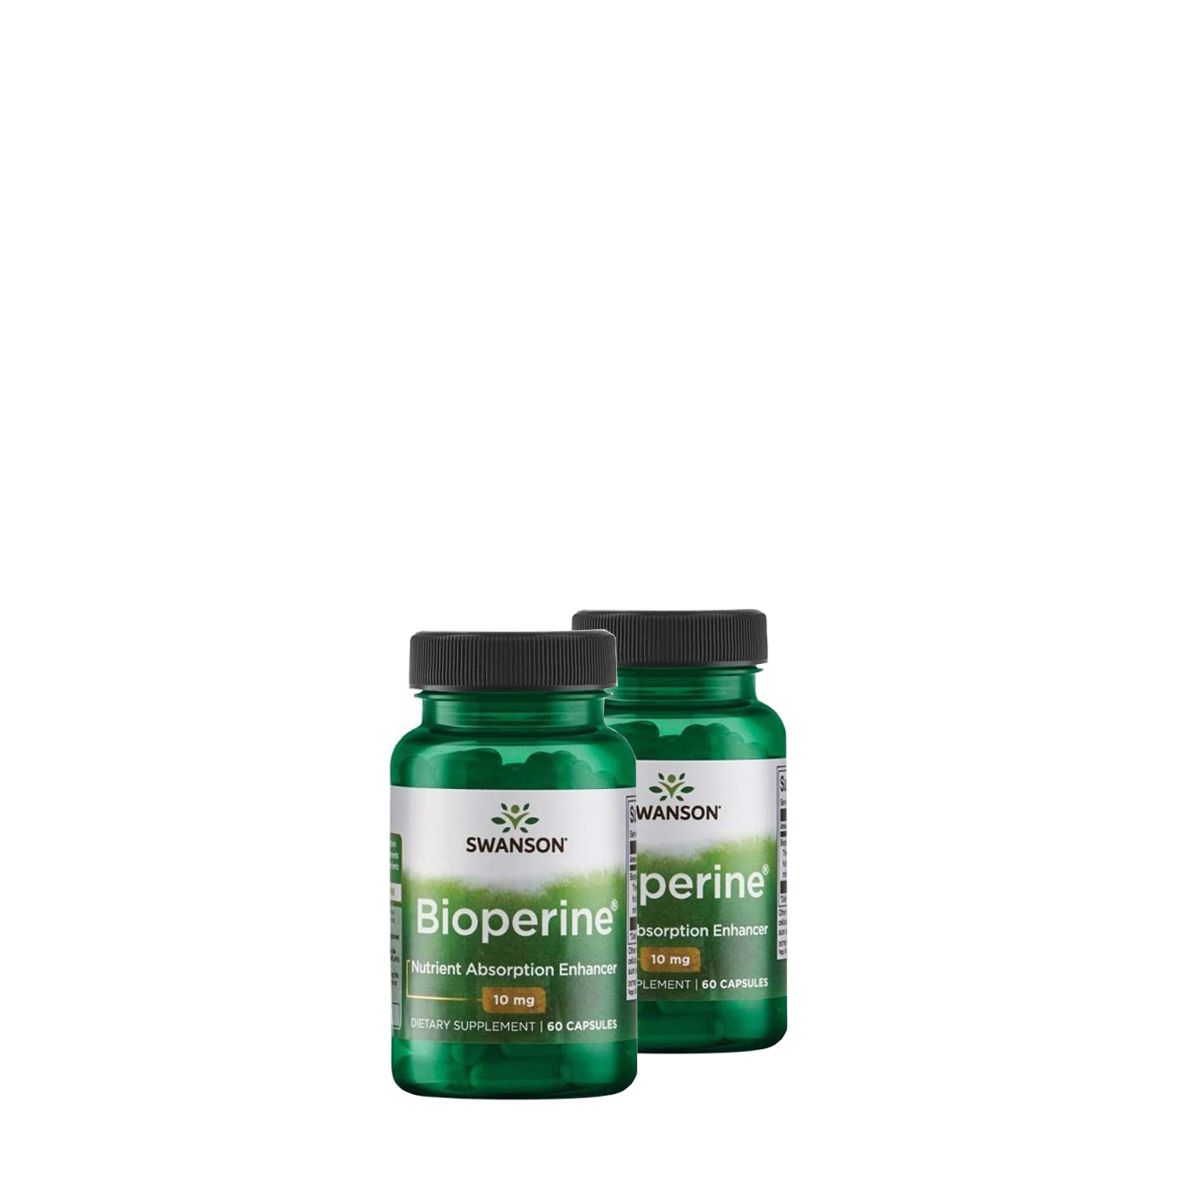 Felszívódás fokozó Bioperin 10 mg, Swanson Bioperine, 2x60 kapszula